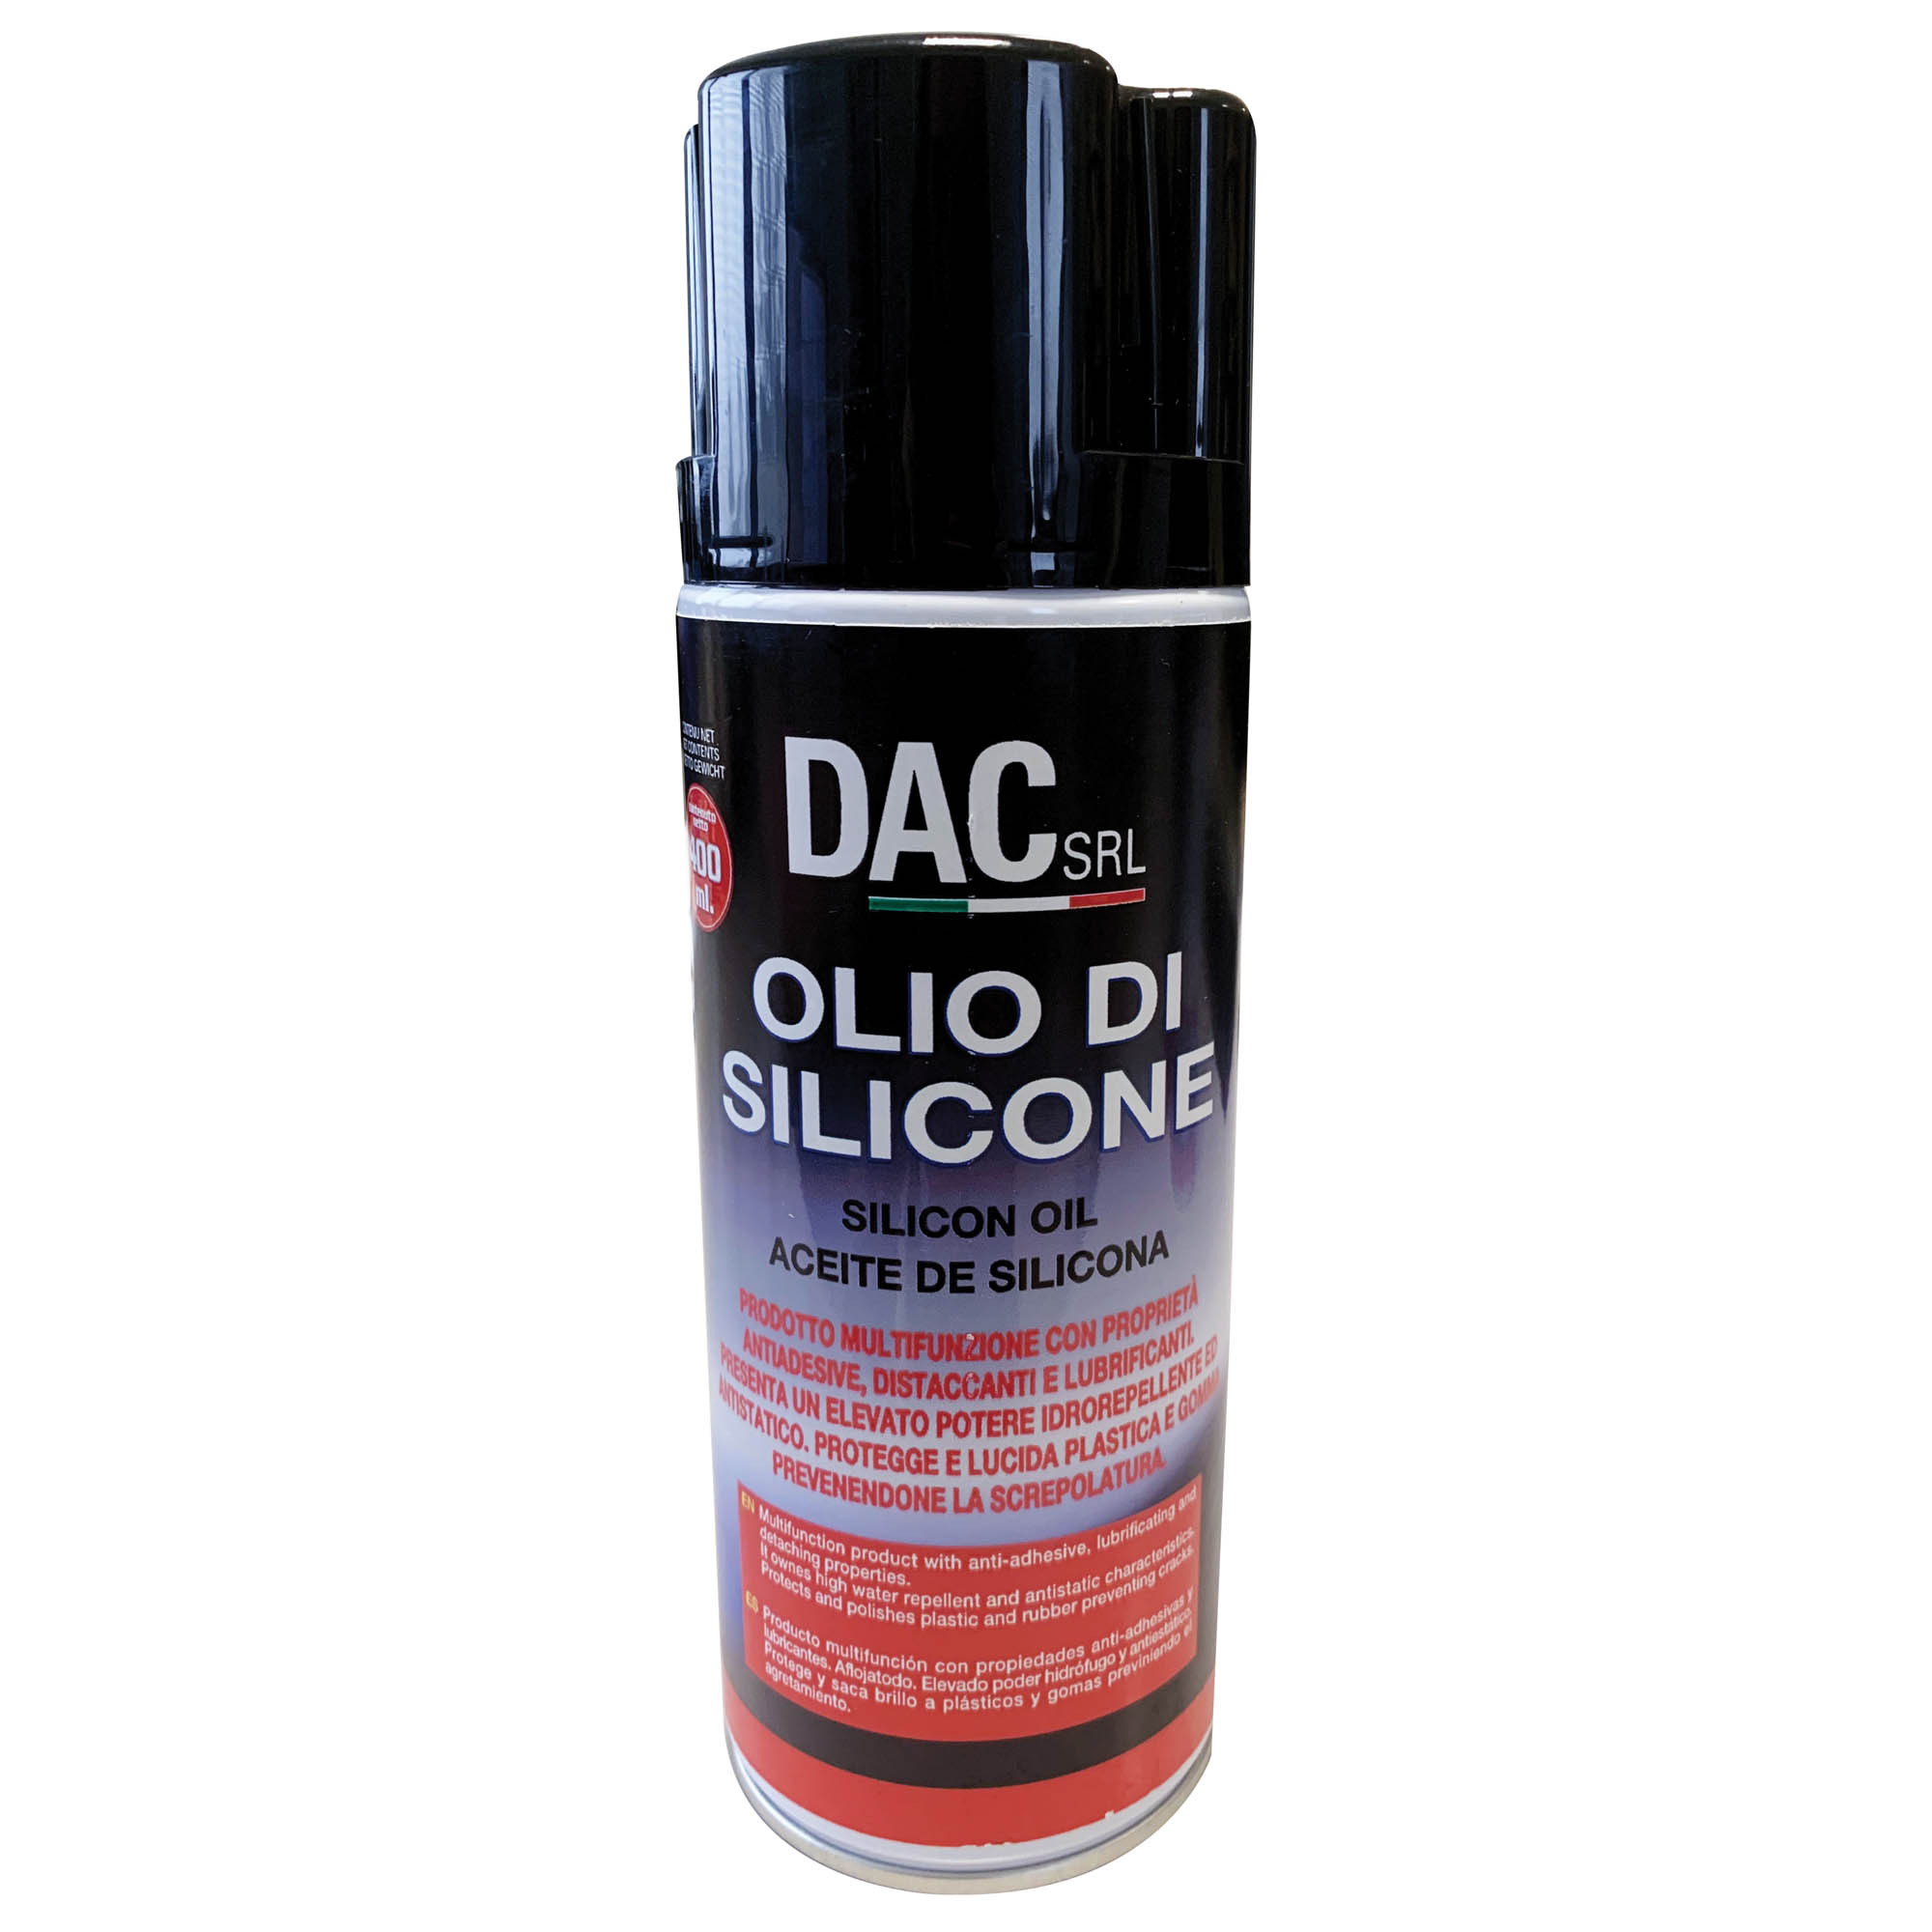 Olio di silicone 400 ml – DAC Srl